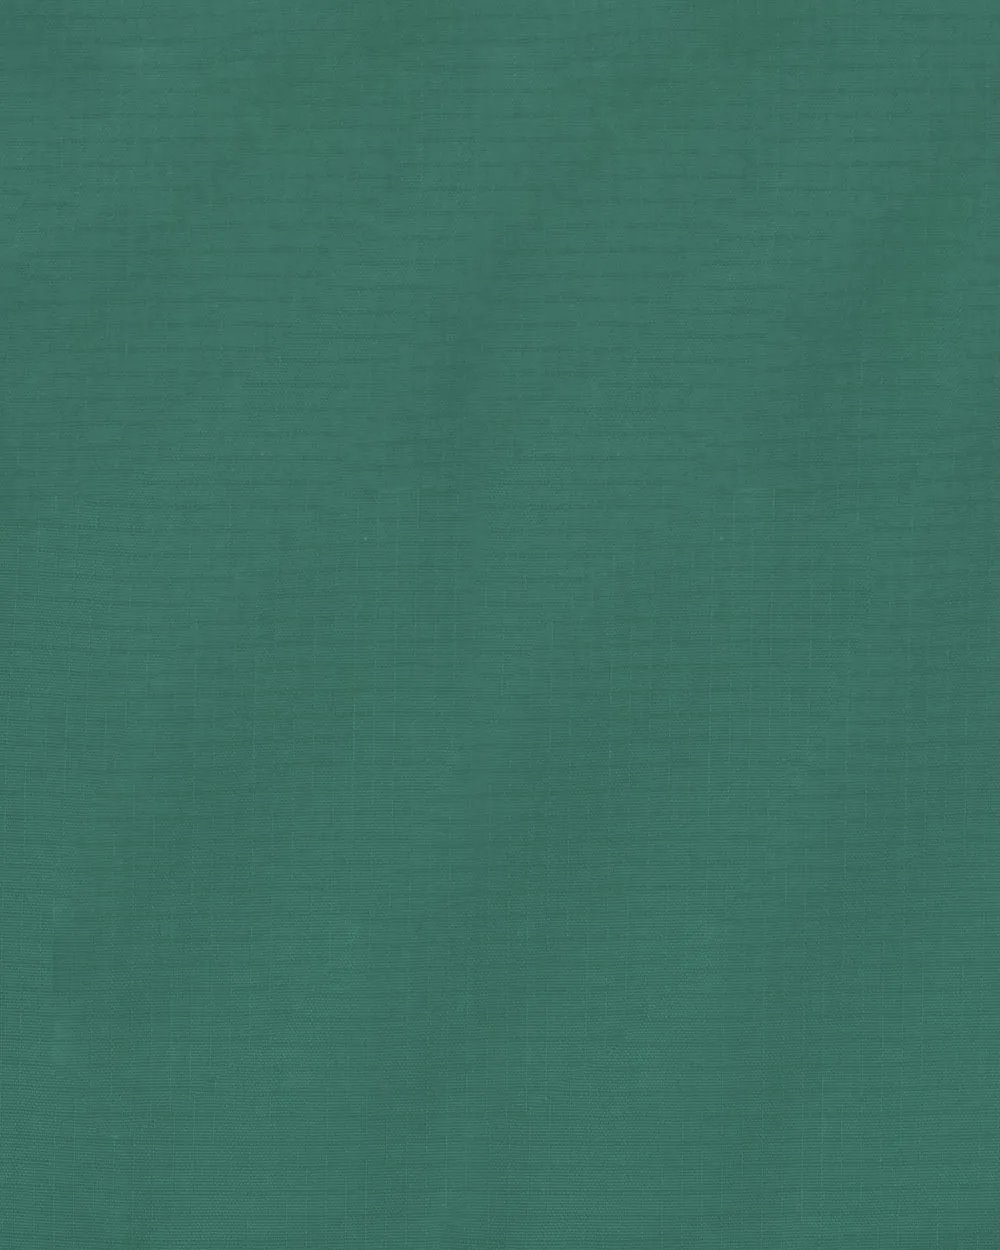 Camisa casual performance verde manga corta slim fit